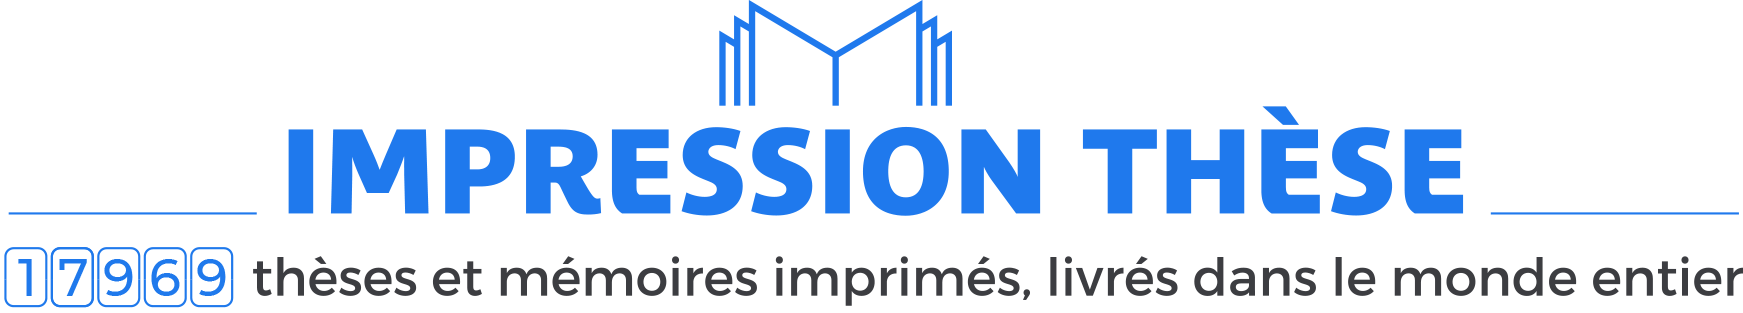 Impression-these.com logo